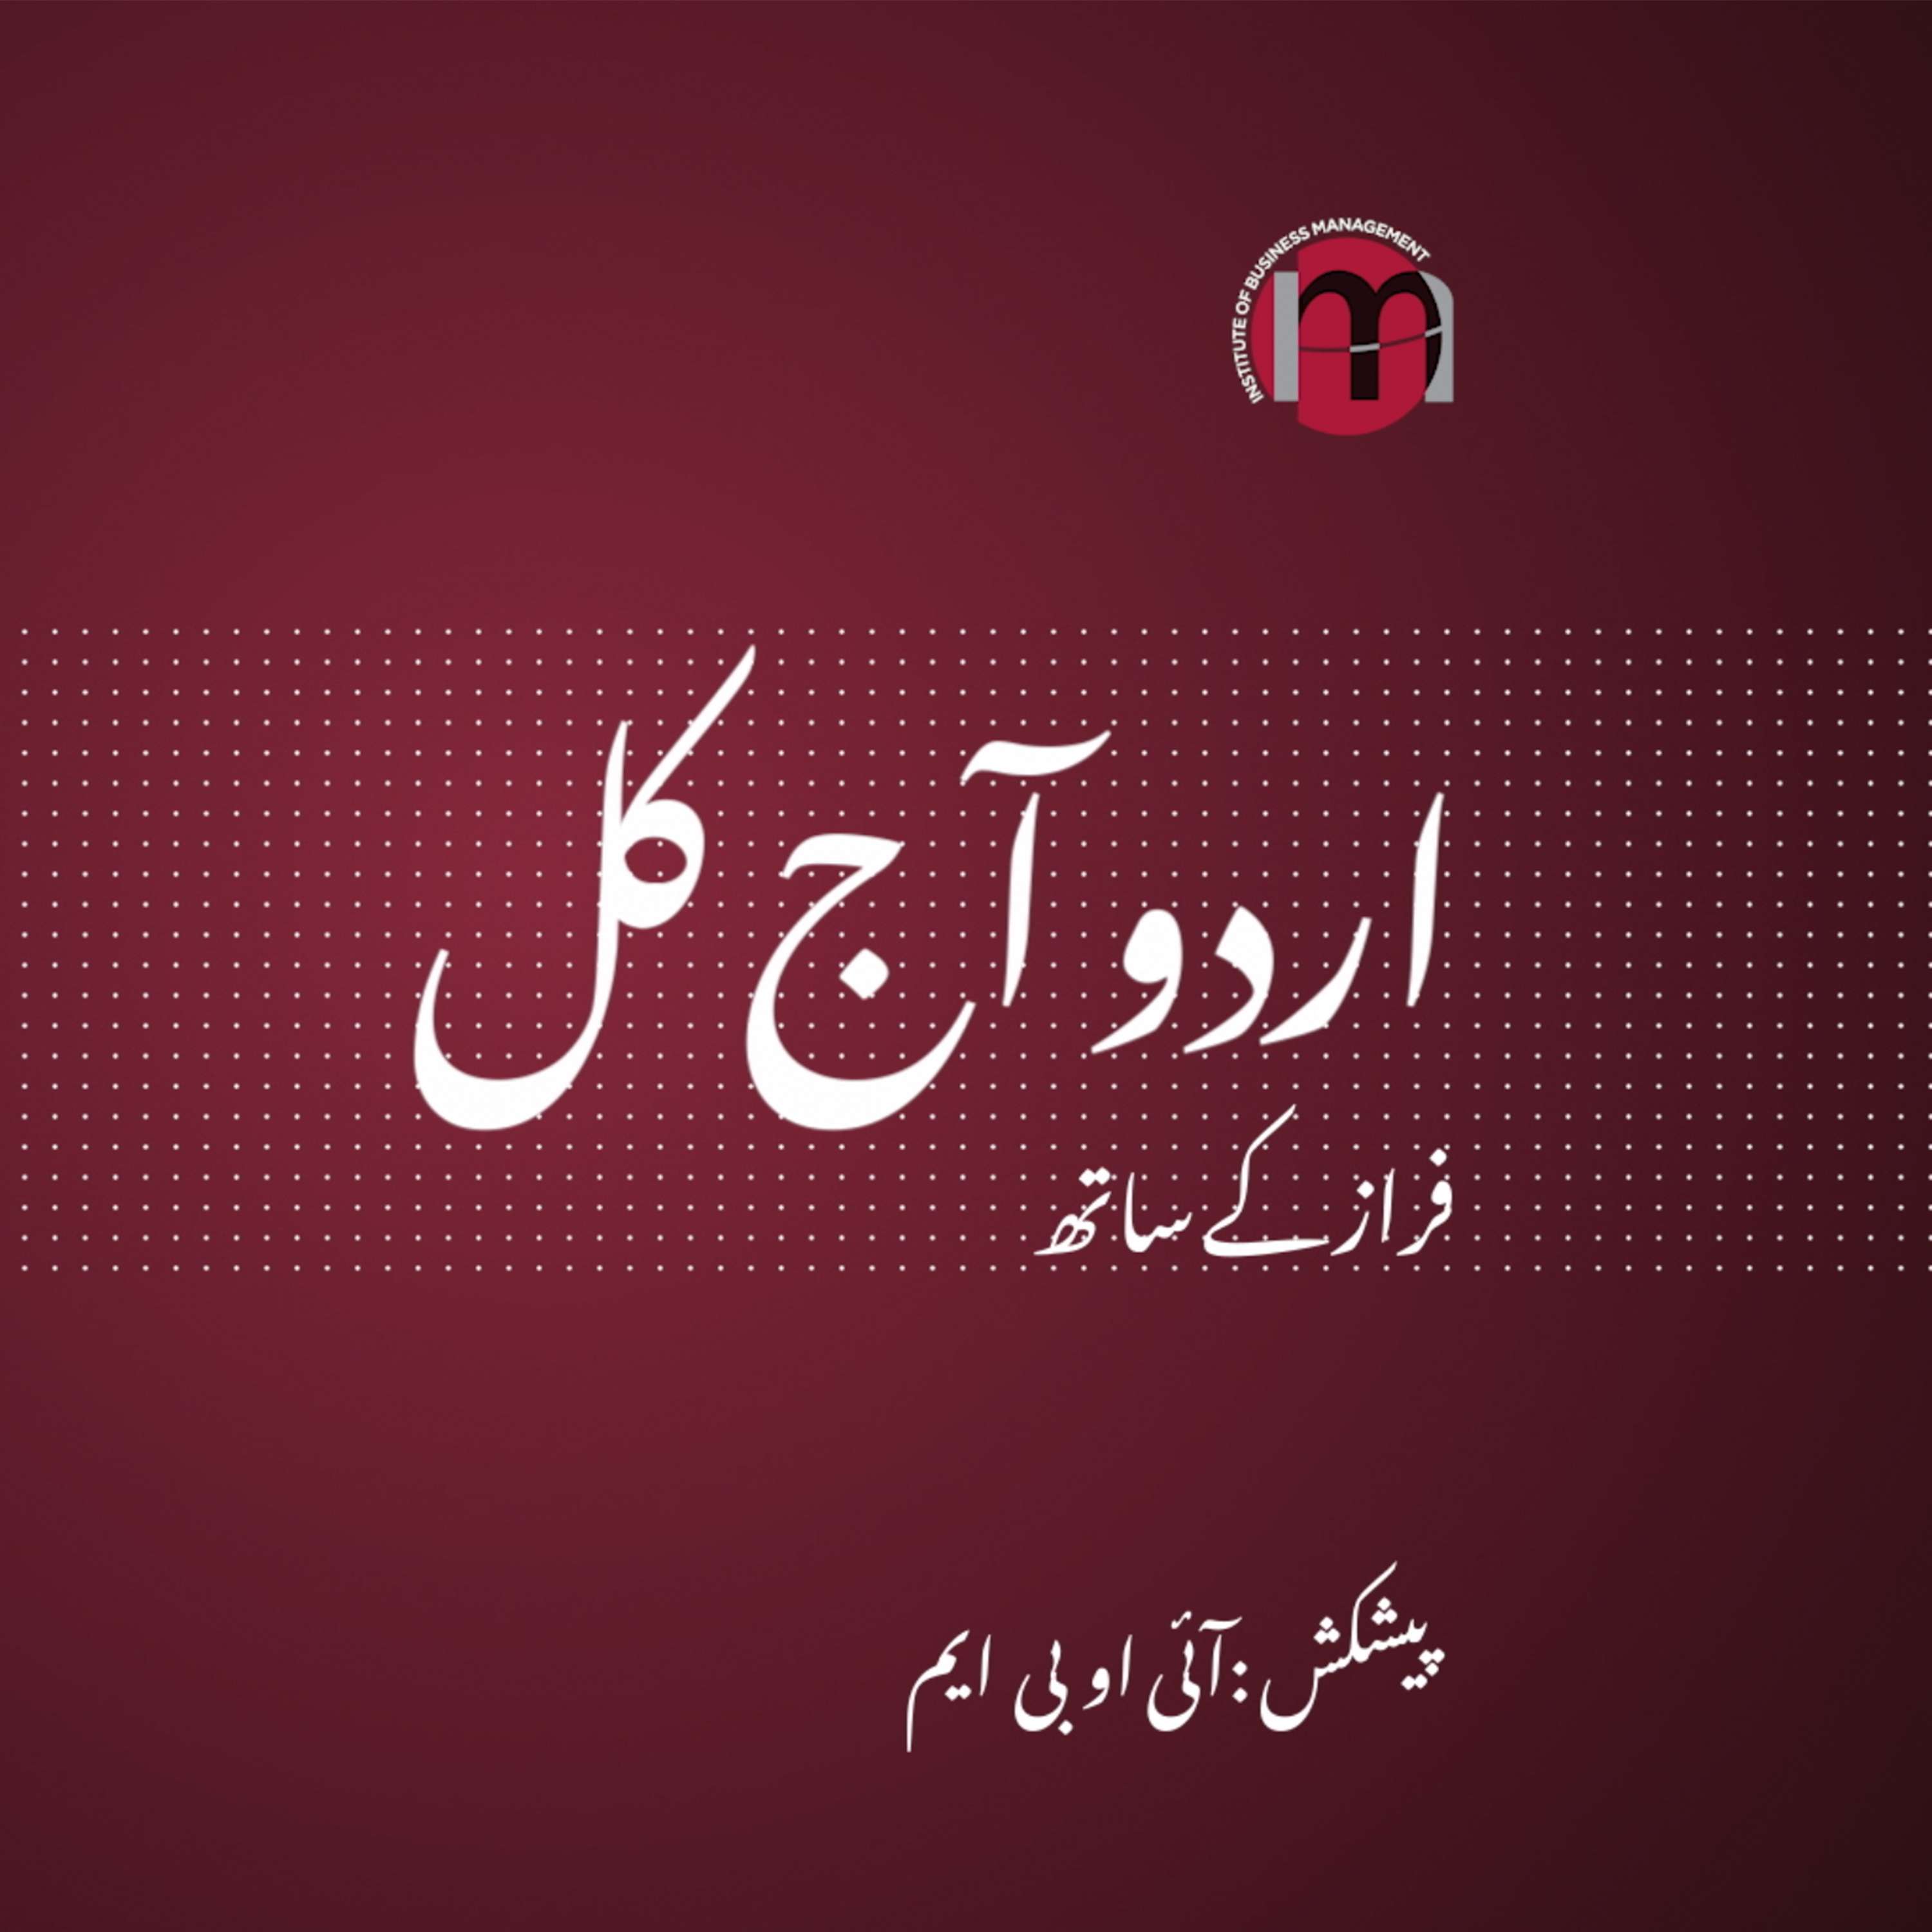 Hidayat Sahab | Effect of English on Urdu Poetry